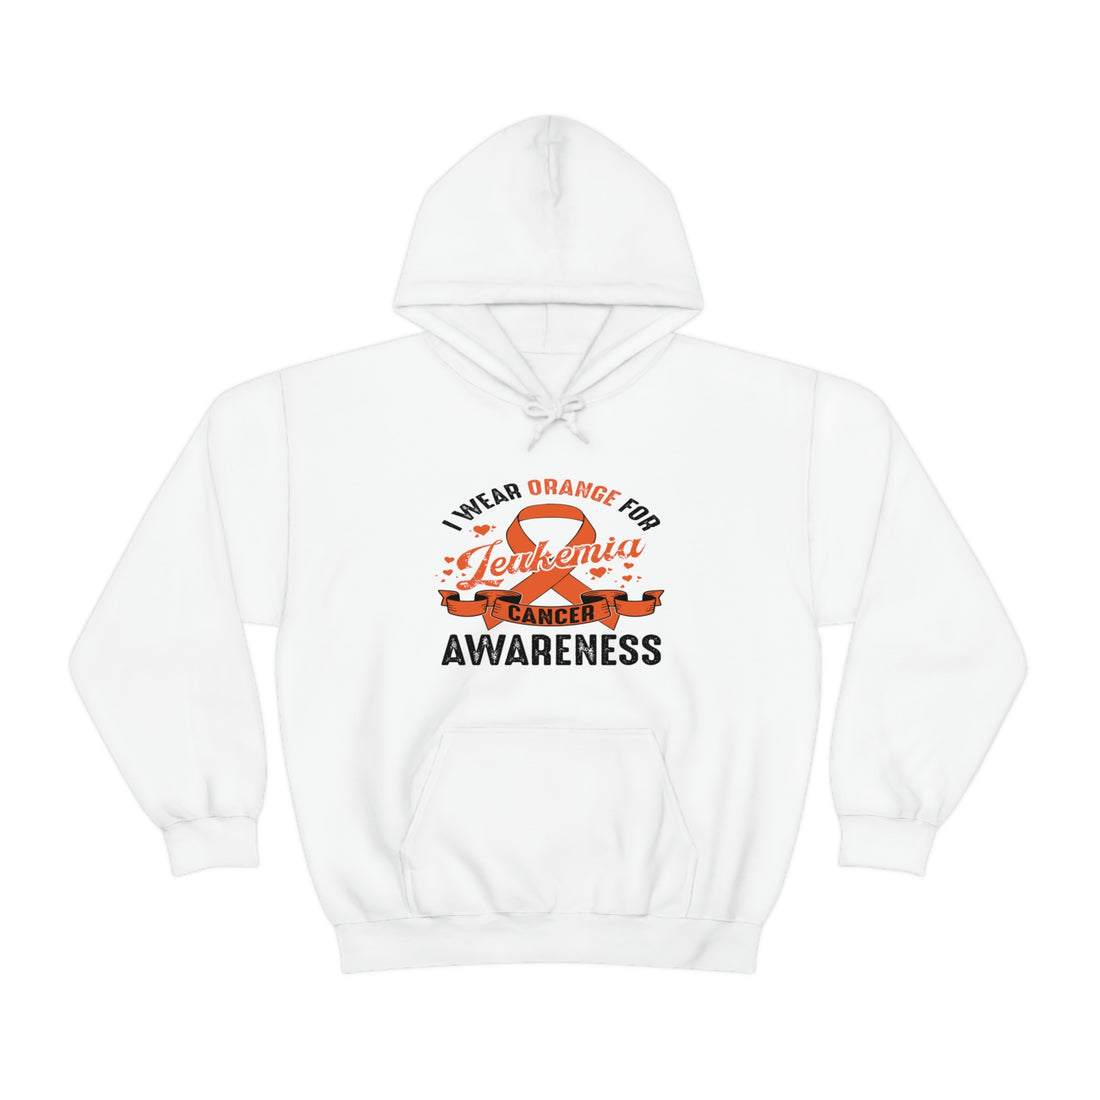 I Wear Orange For Leukemia Cancer Awareness - Unisex Heavy Blend™ Hooded Sweatshirt